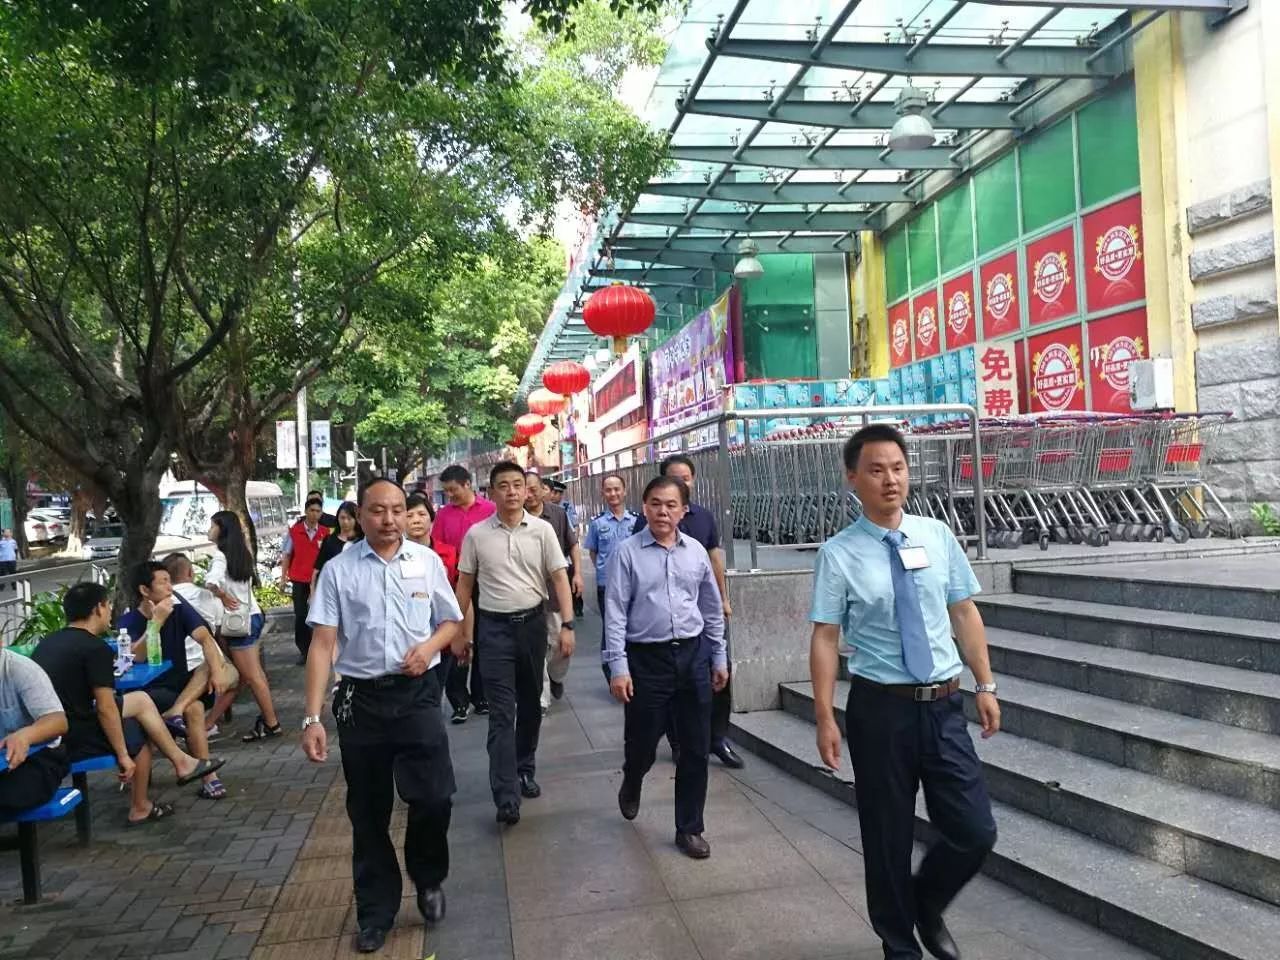 深圳市南山区领导莅临西丽店进行节前安全检查指导工作